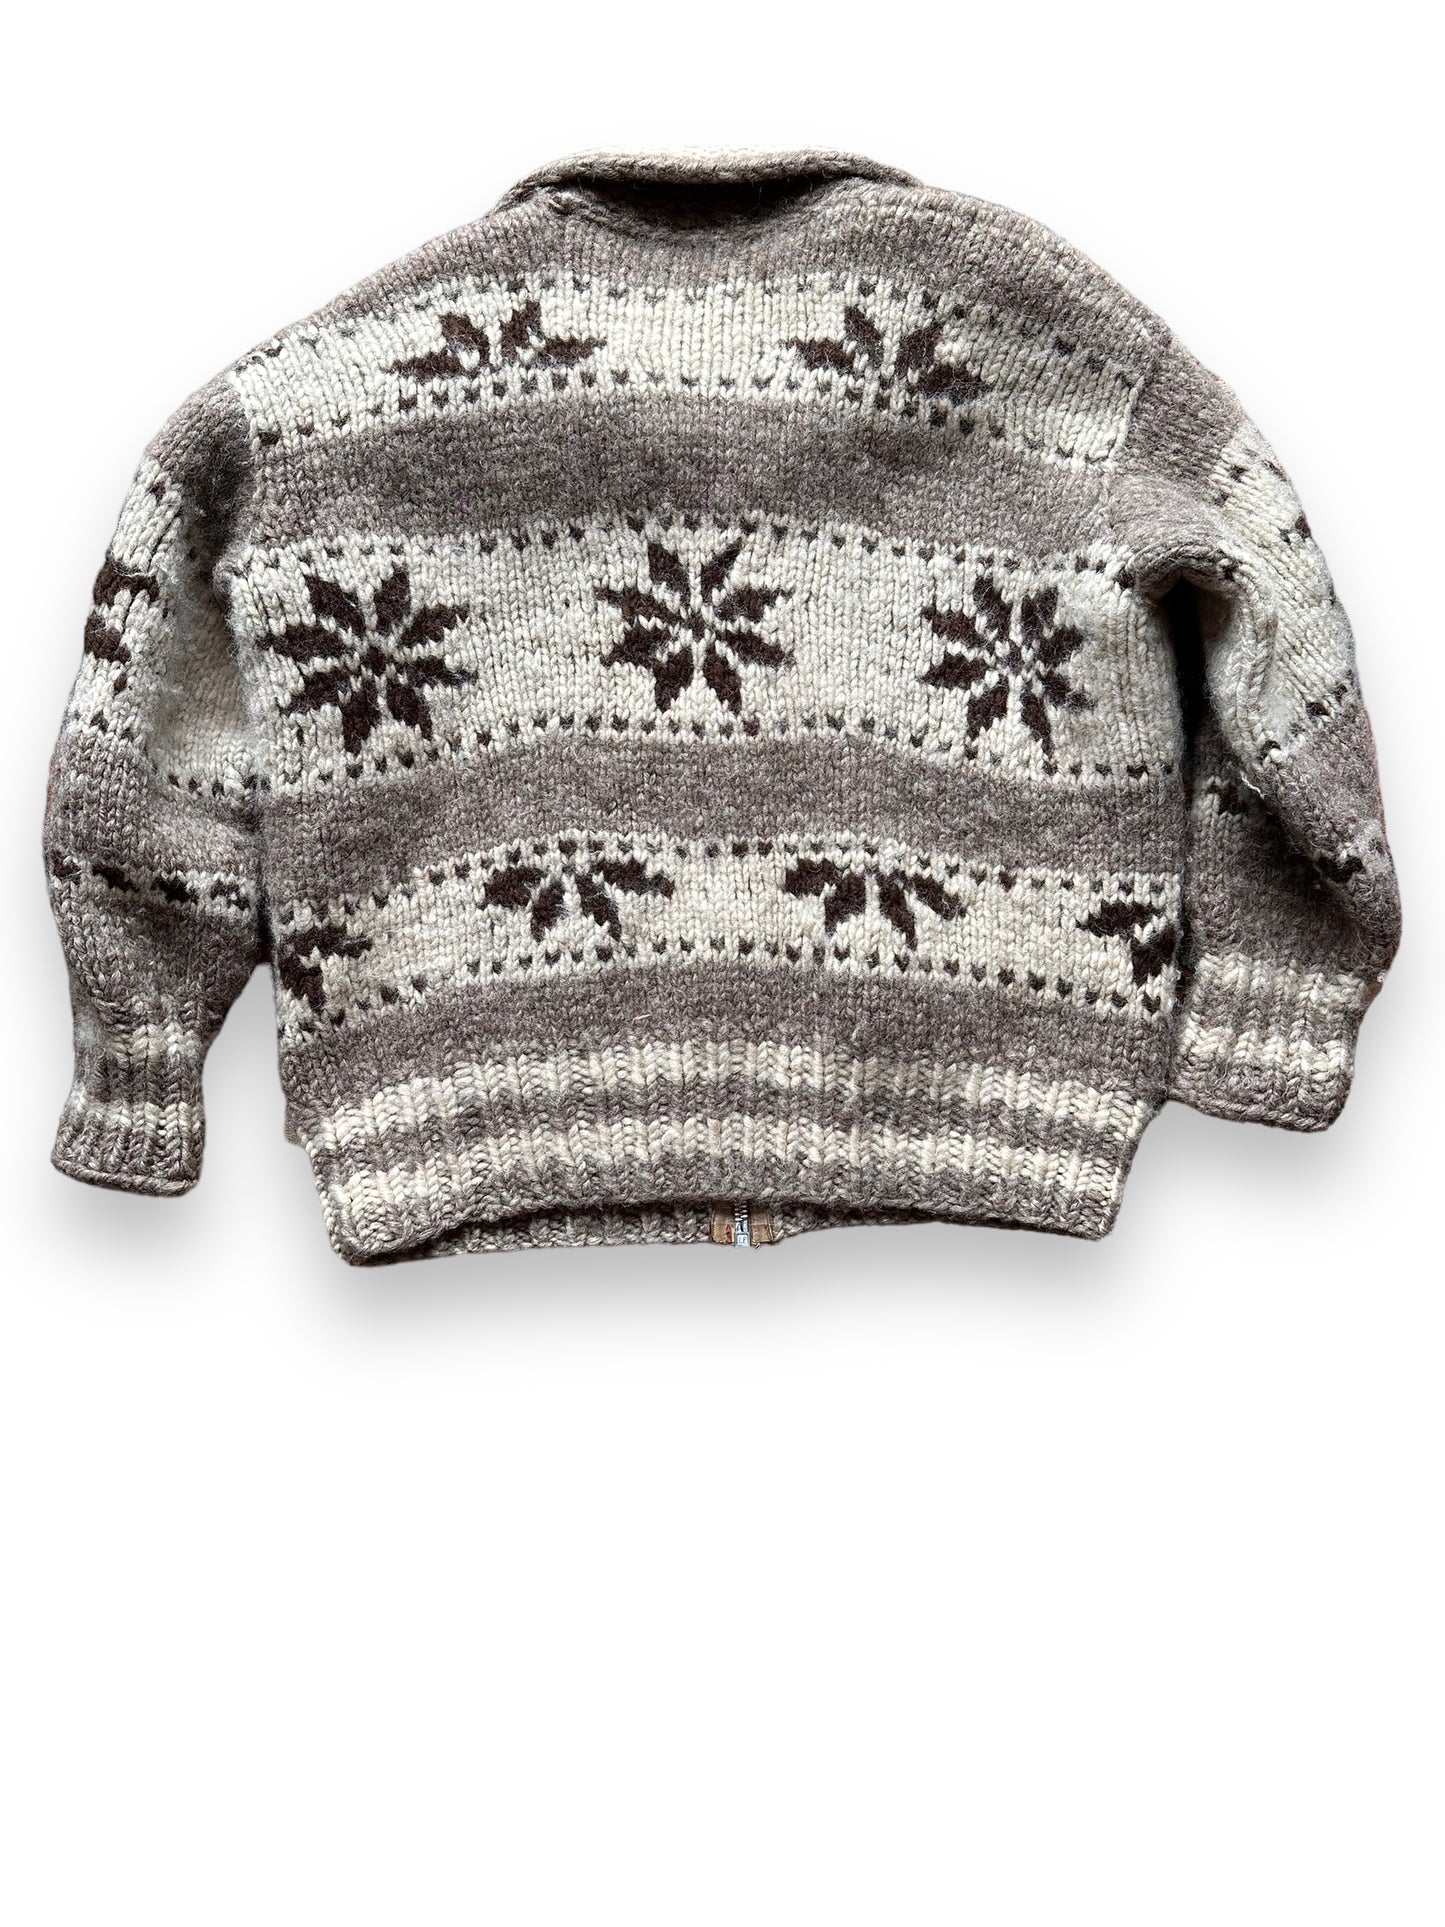 back of Vintage Wool Cowichan Sweater SZ XL |  Vintage Cowichan Sweaters Seattle | Barn Owl Vintage Seattle